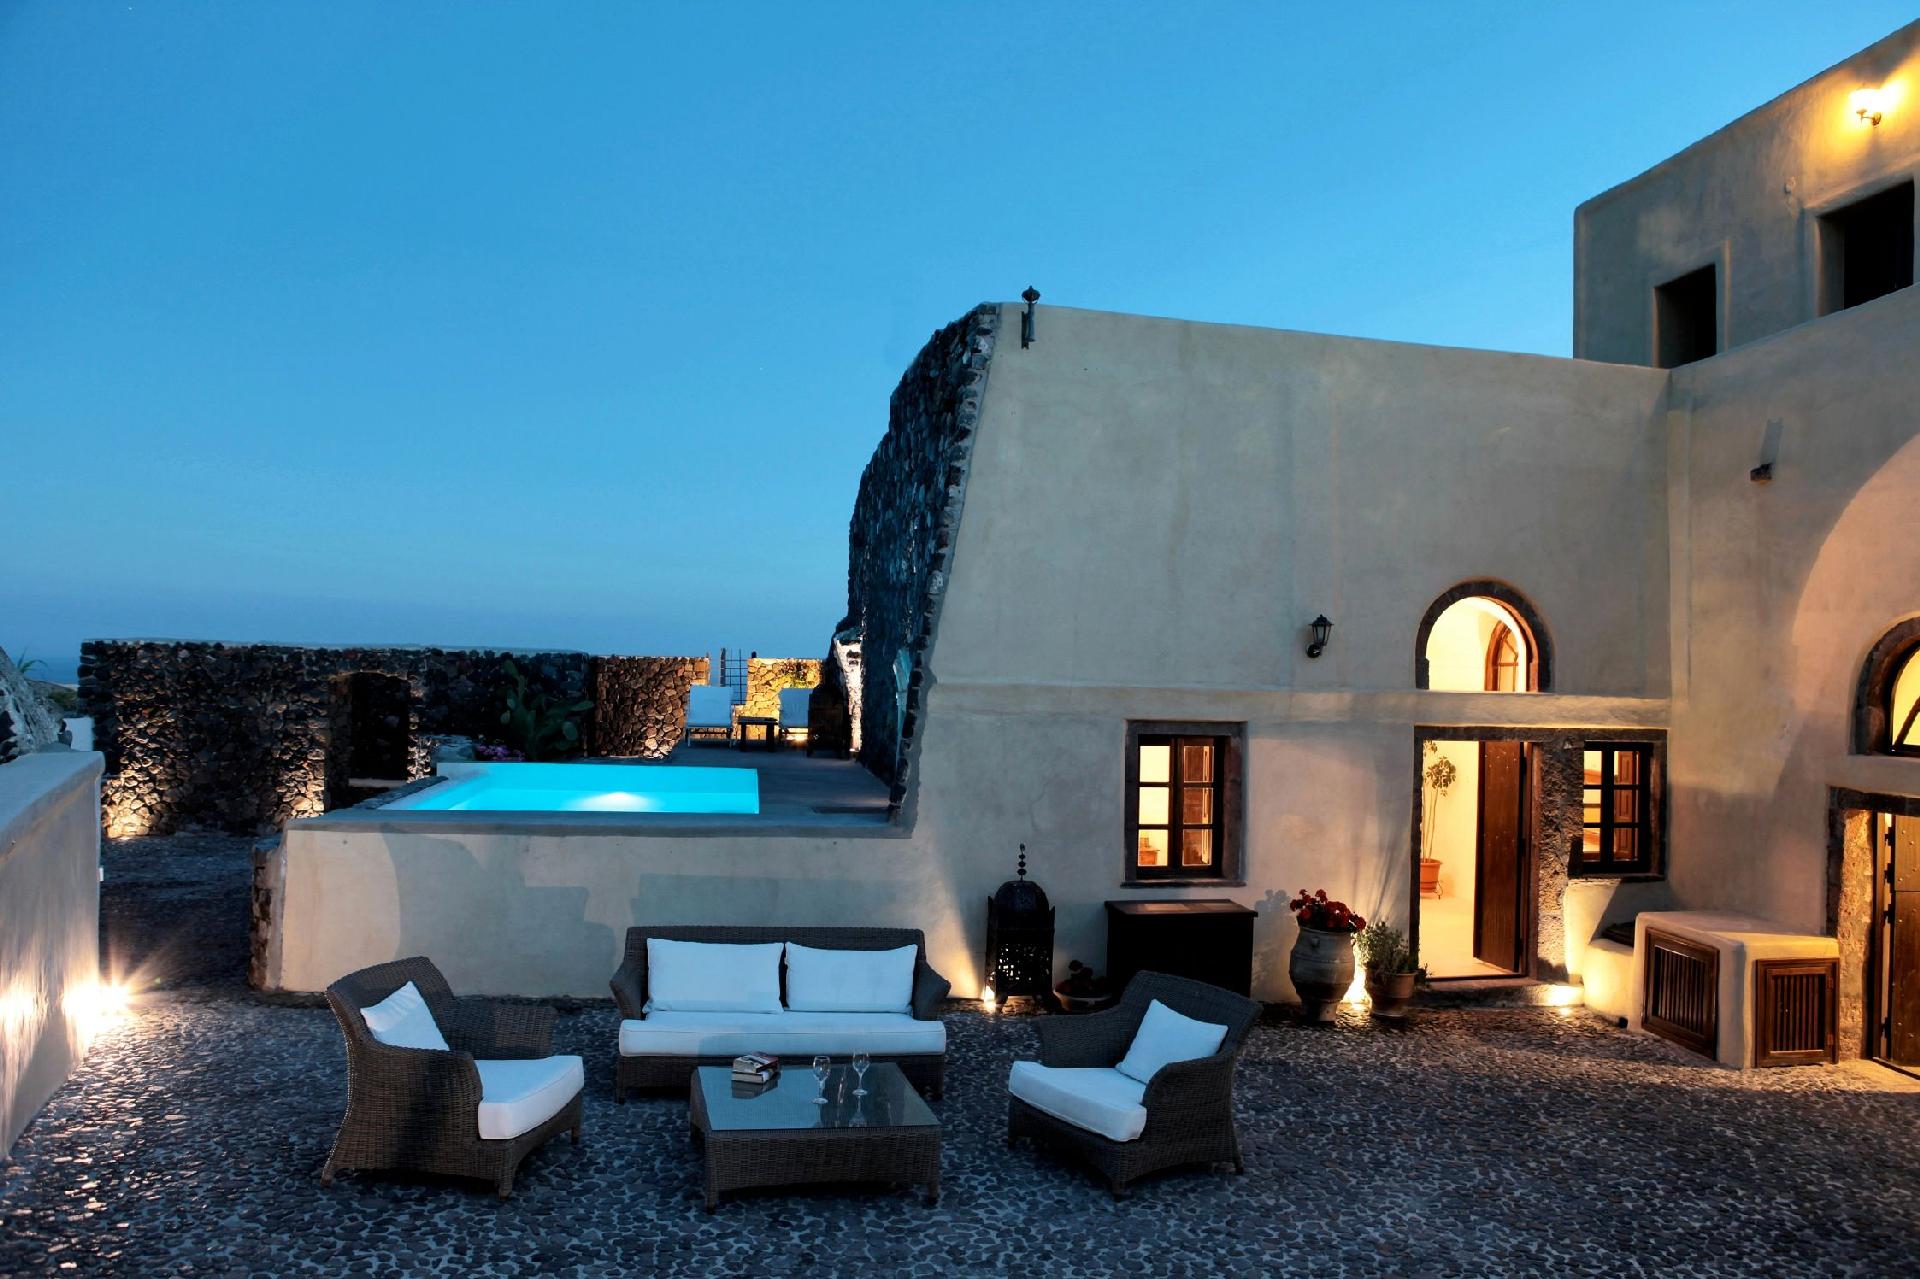 Prachtvolles Herrenhaus mit Terrasse, riesigem Hof Ferienhaus in Griechenland